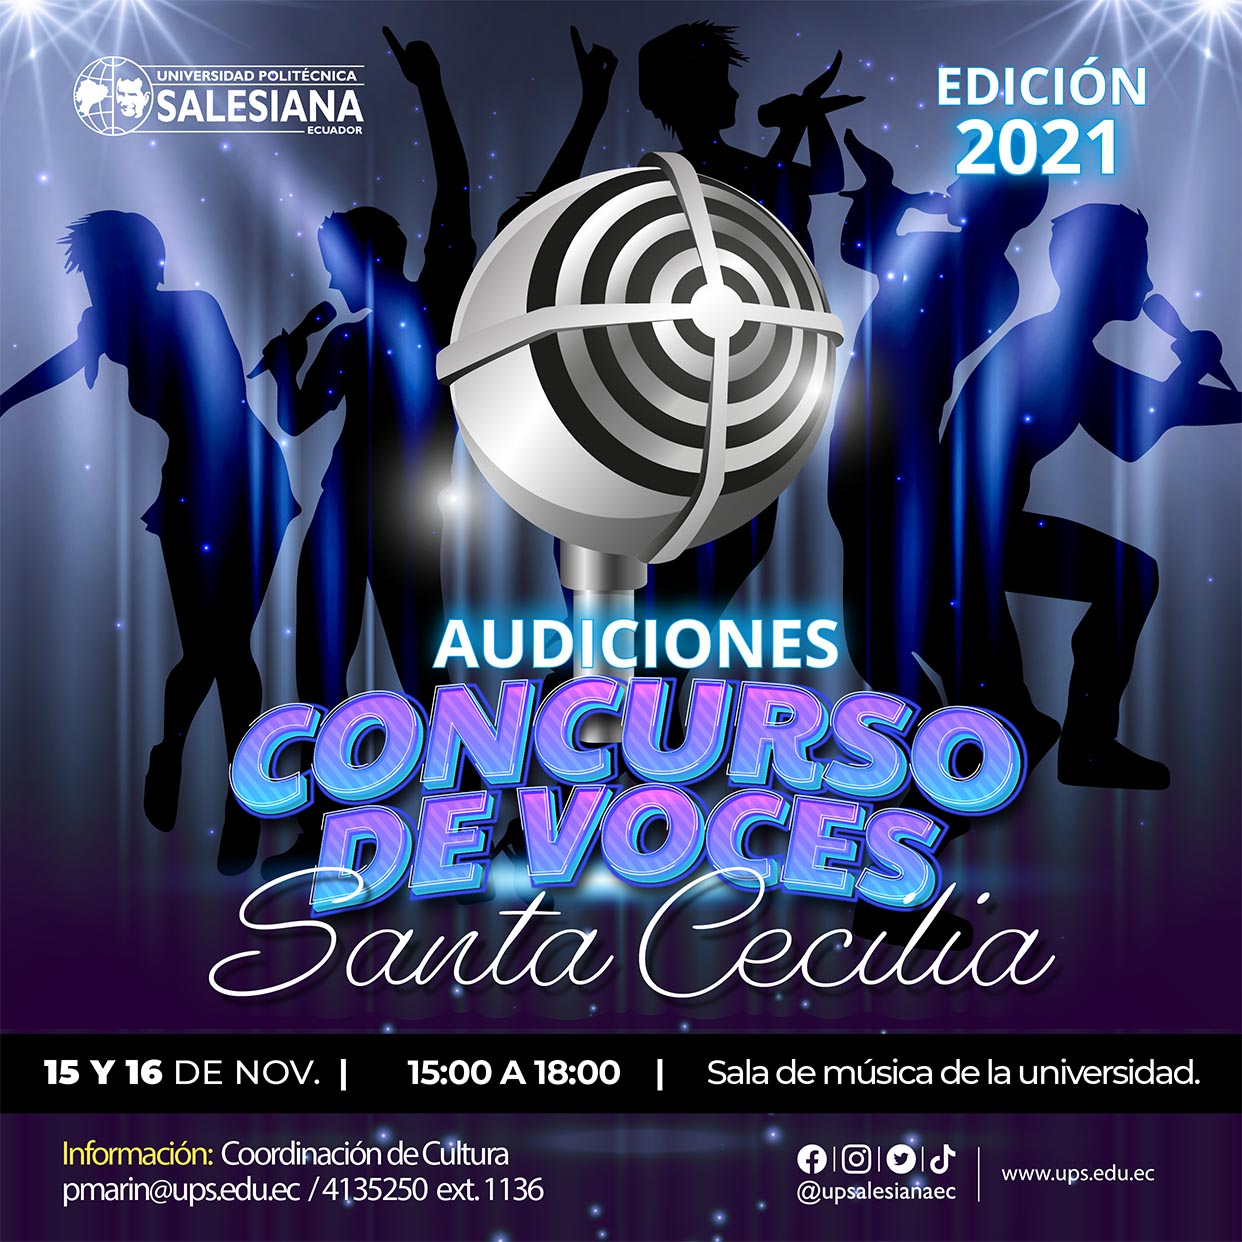 Afiche promocional para las Audiciones para el Concurso de Voces Santa Cecilia, edición 2021